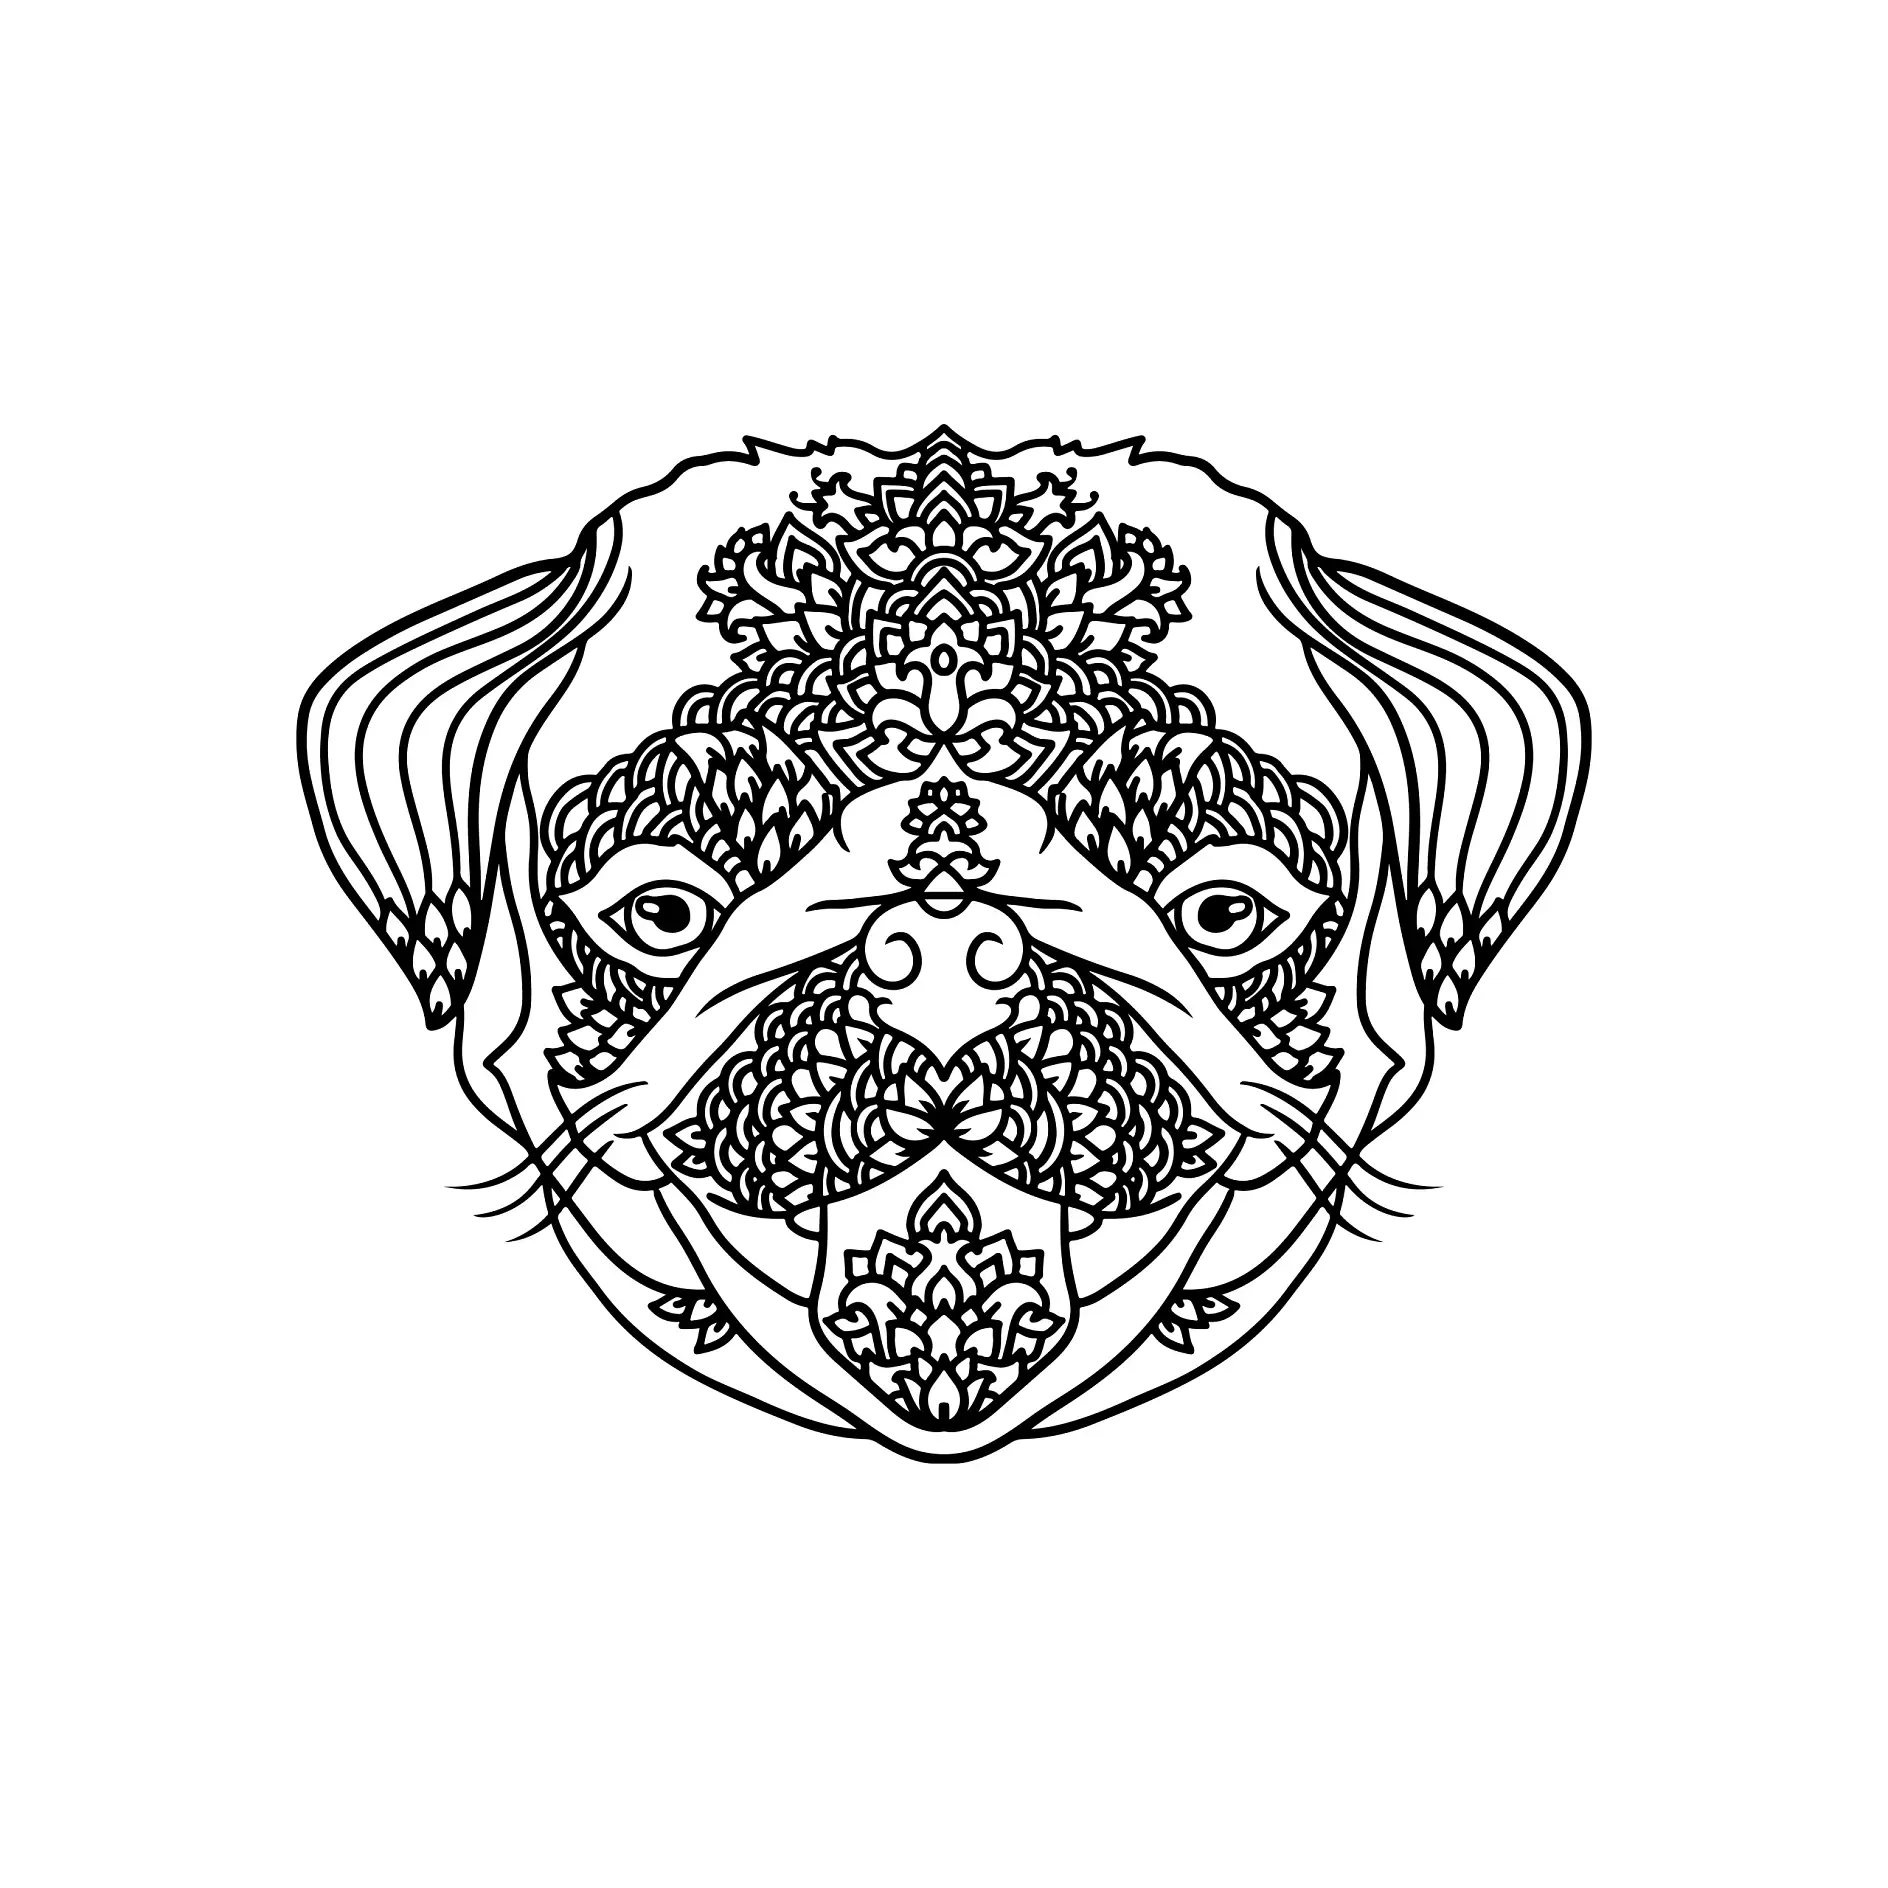 Ausmalbild Mandala mit Hund und symmetrischen dekorativen Mustern